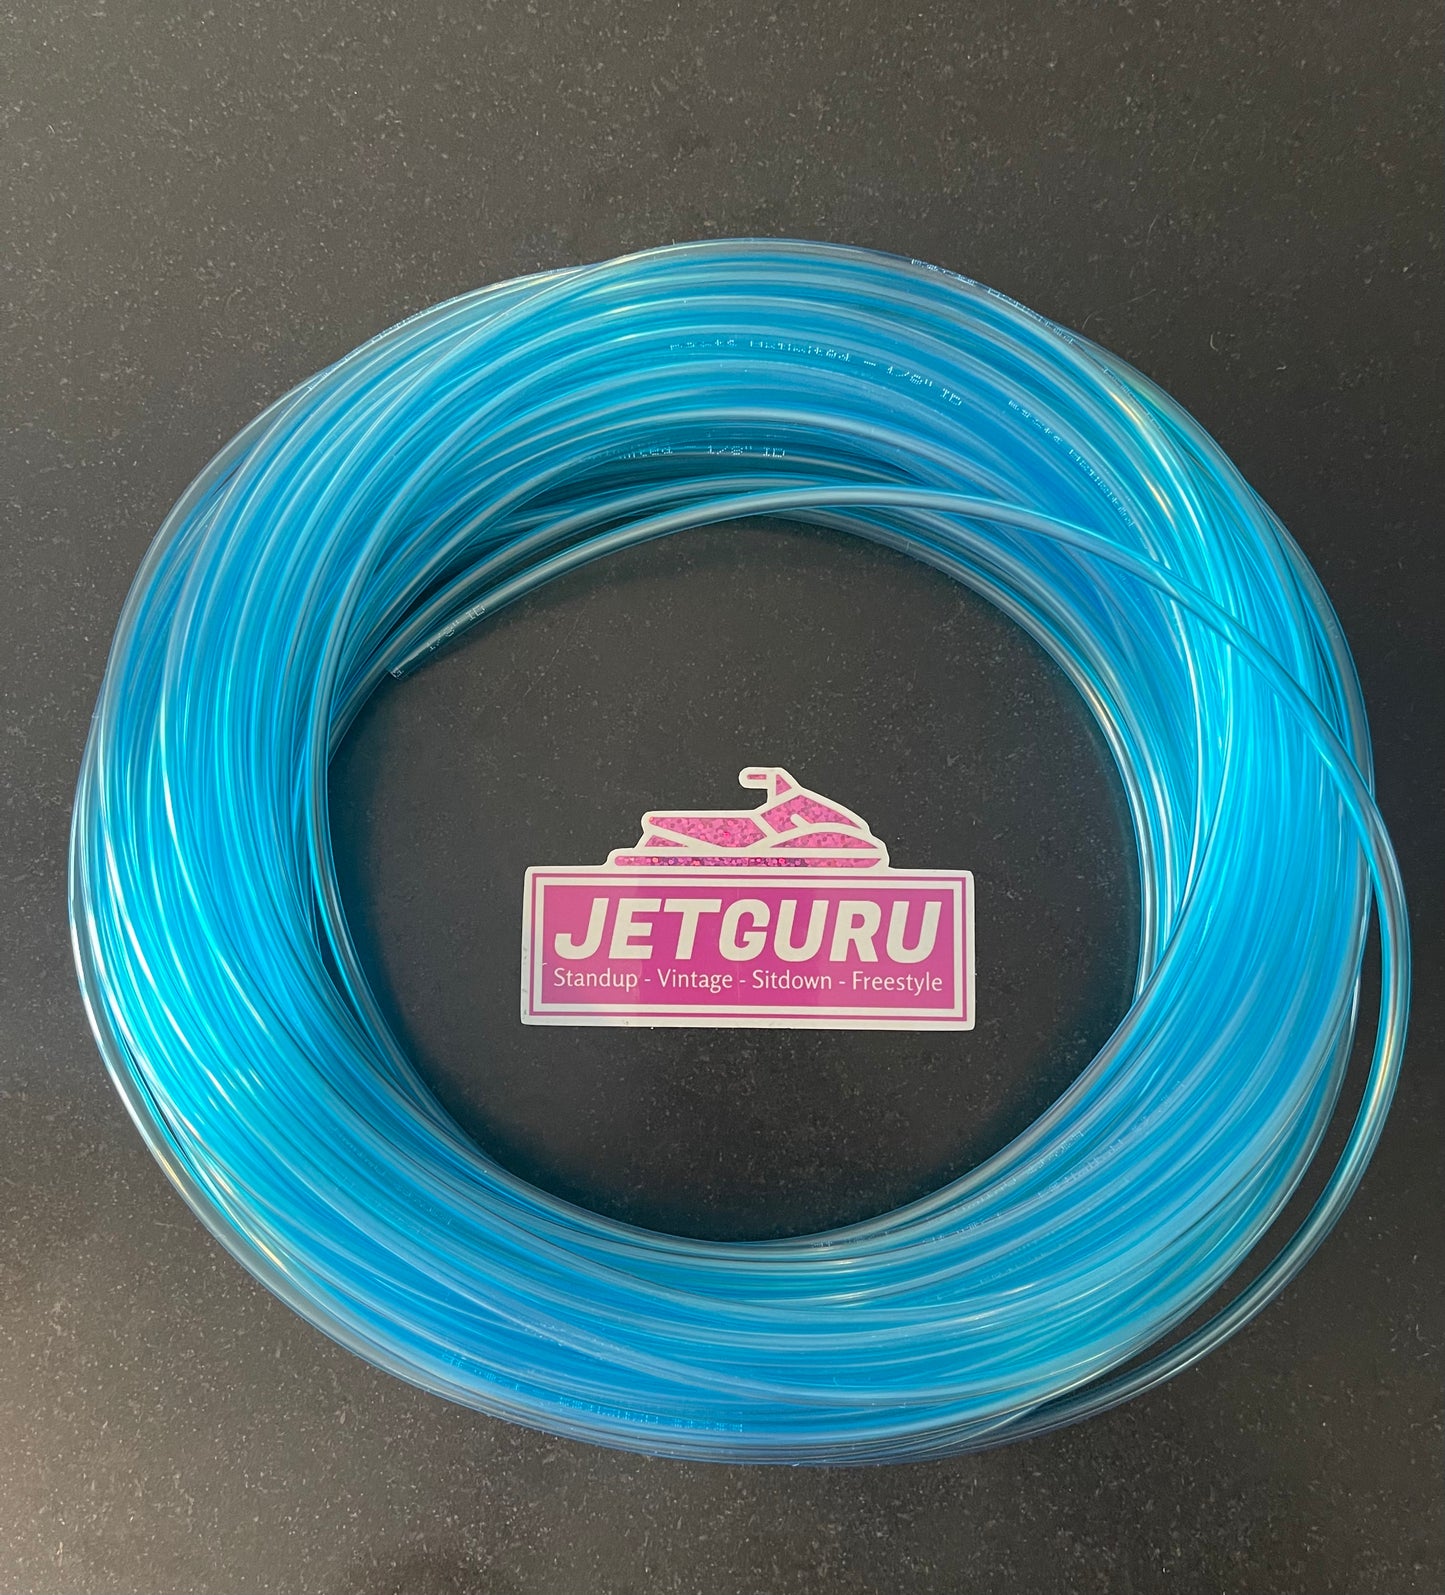 Jet Ski / Motorcycle / ATV Fuel Primer Line - Blue transparent 1/8" 3.2mm ID - 1 Meter Lengths